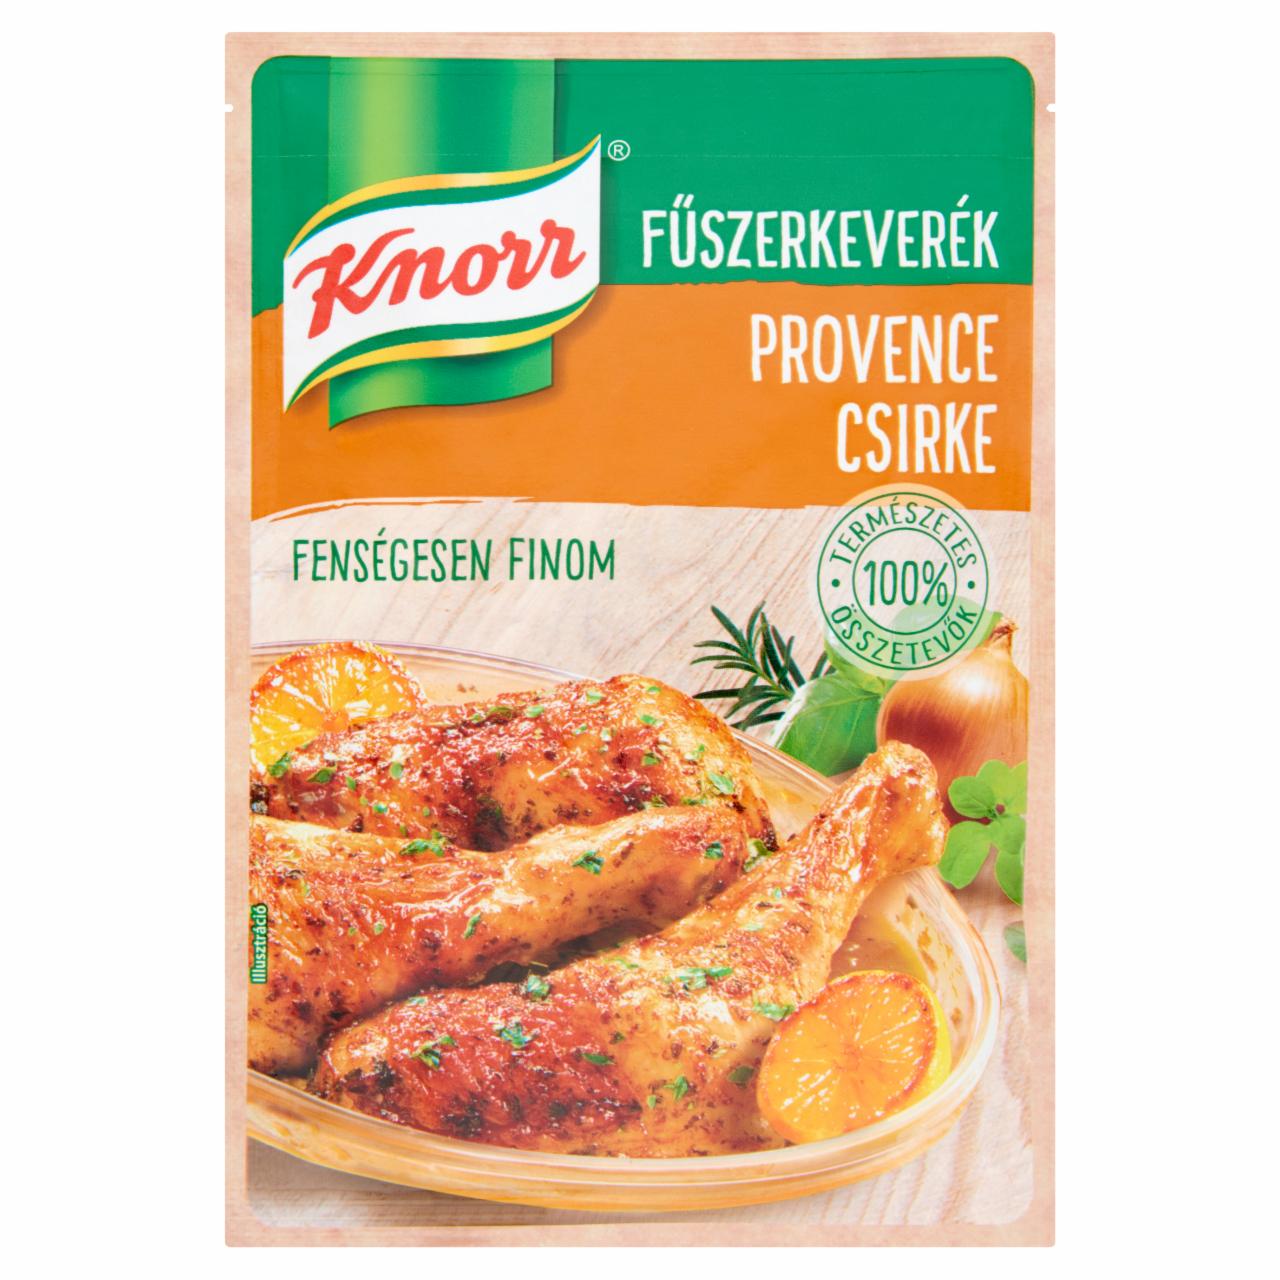 Képek - Knorr Provence csirke fűszerkeverék 35 g